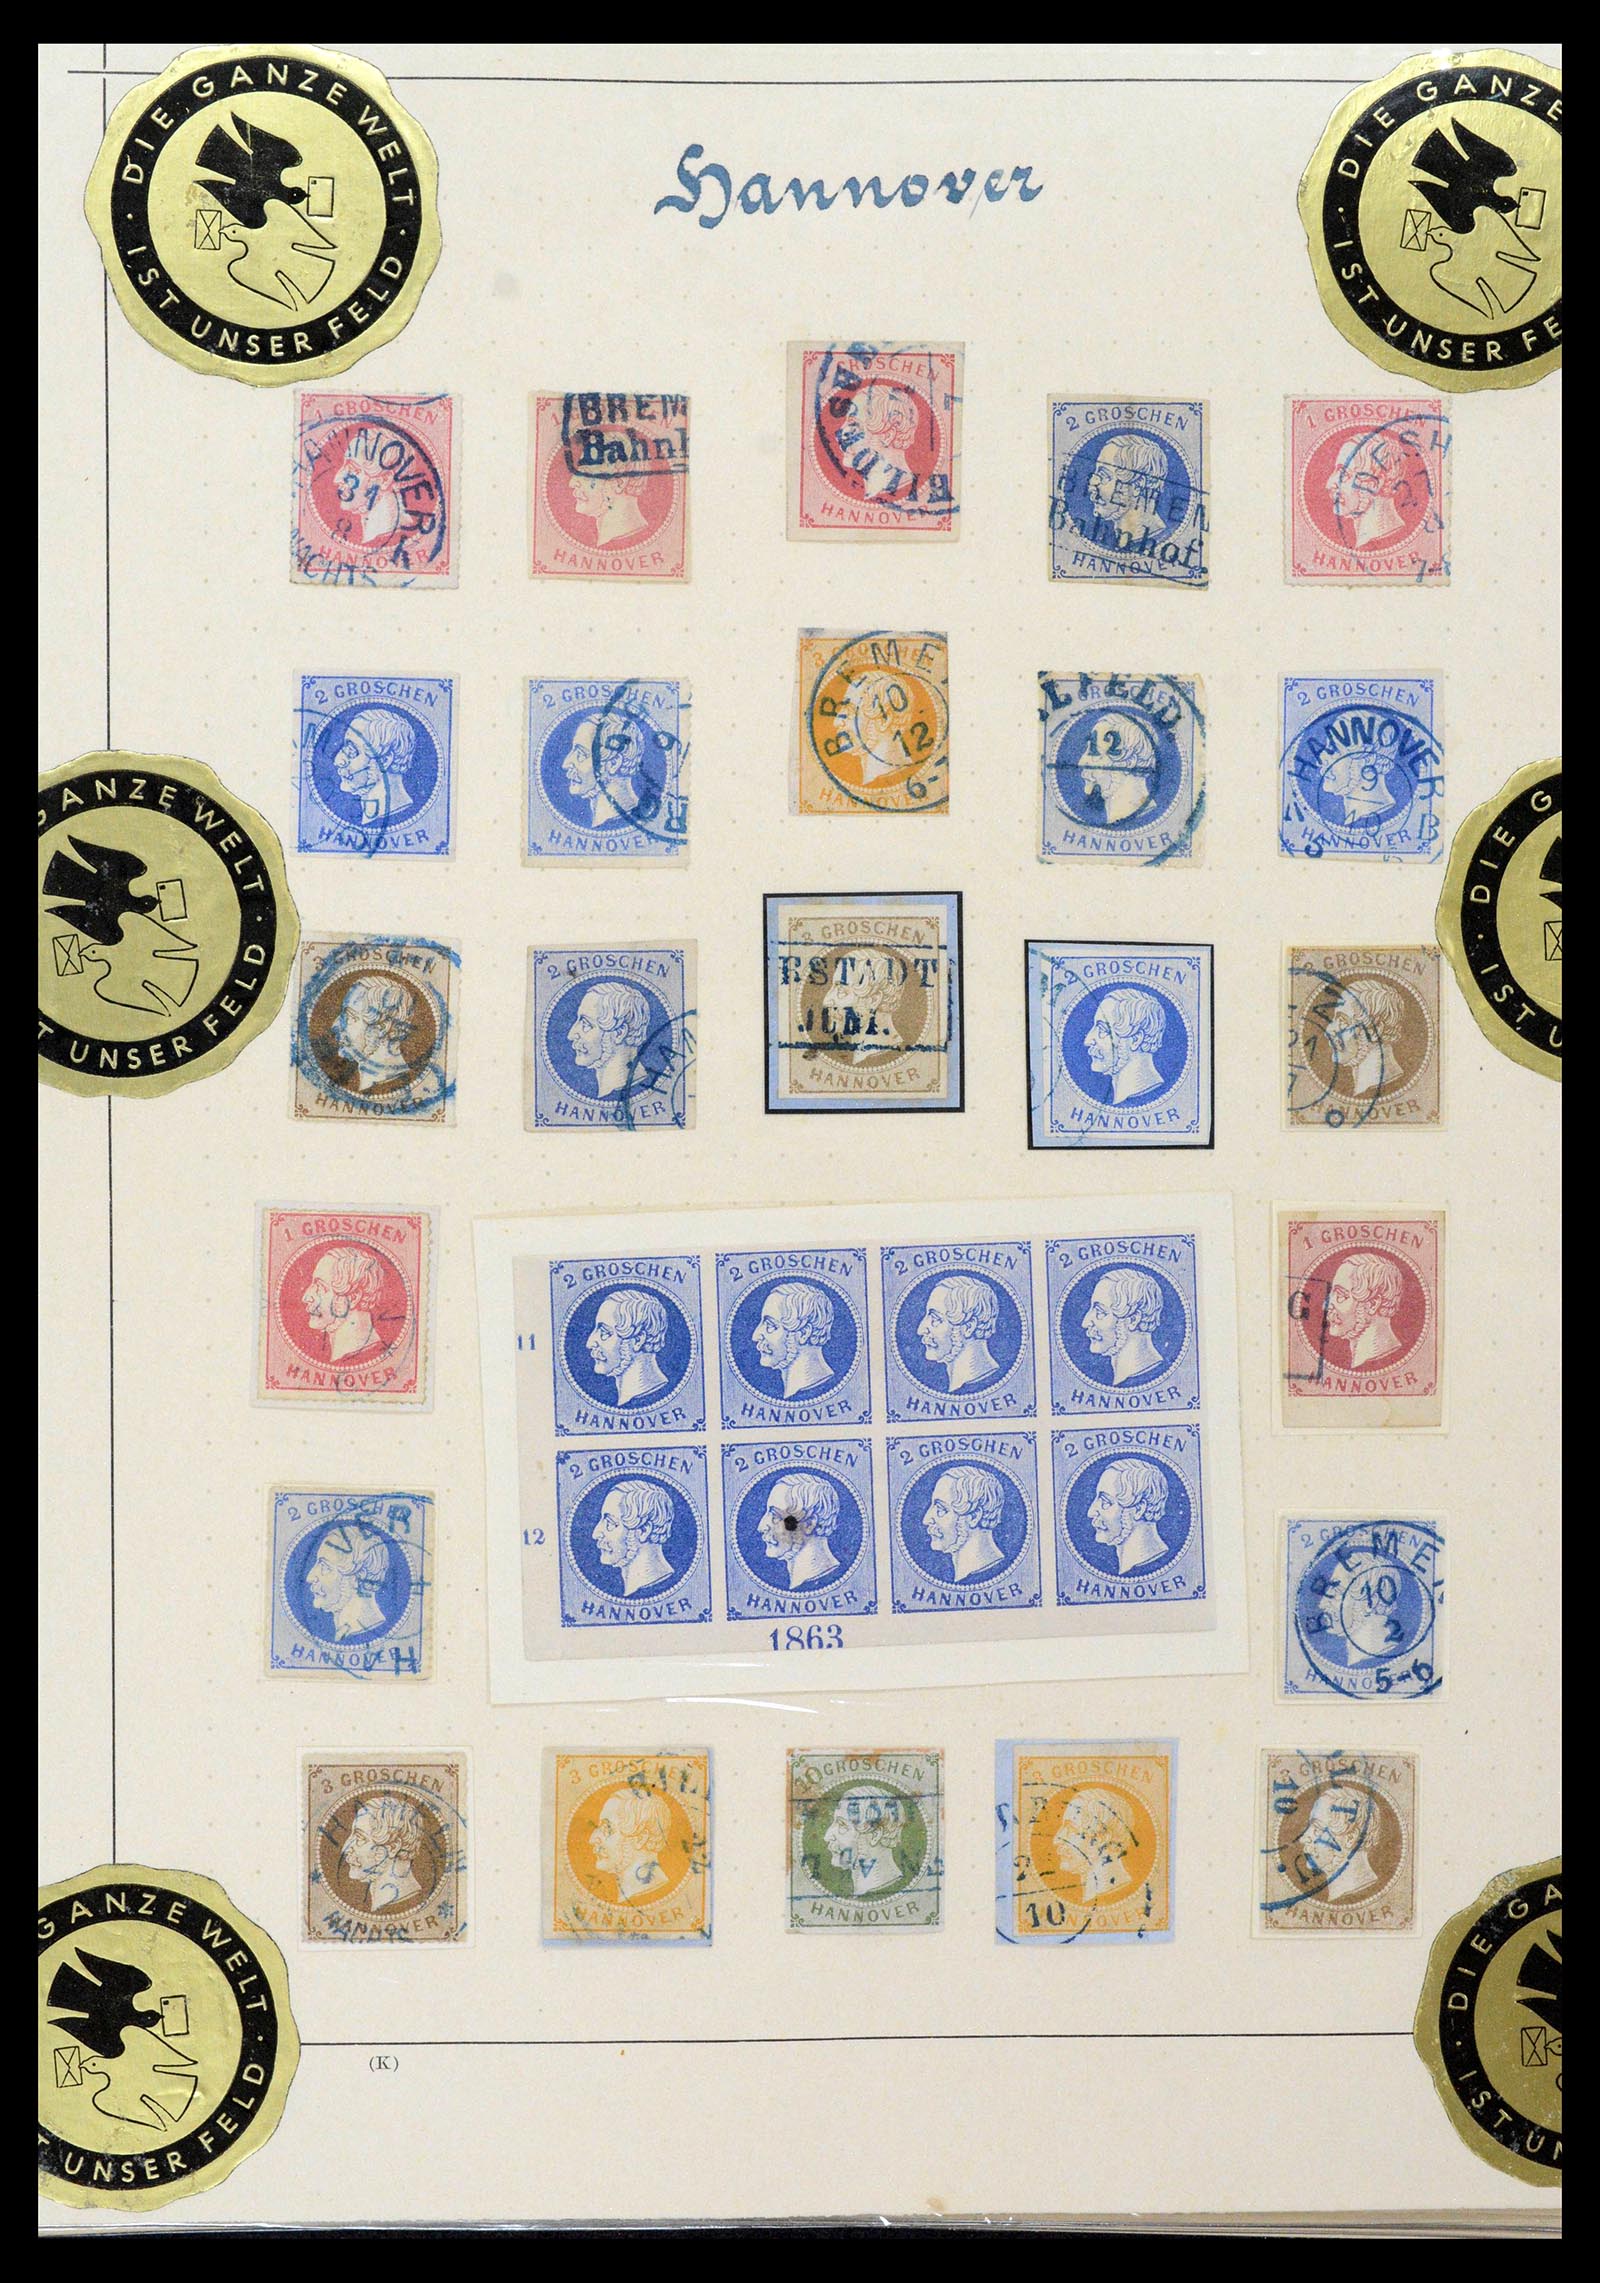 39200 0013 - Postzegelverzameling 39200 Hannover SUPER verzameling 1850-1864.